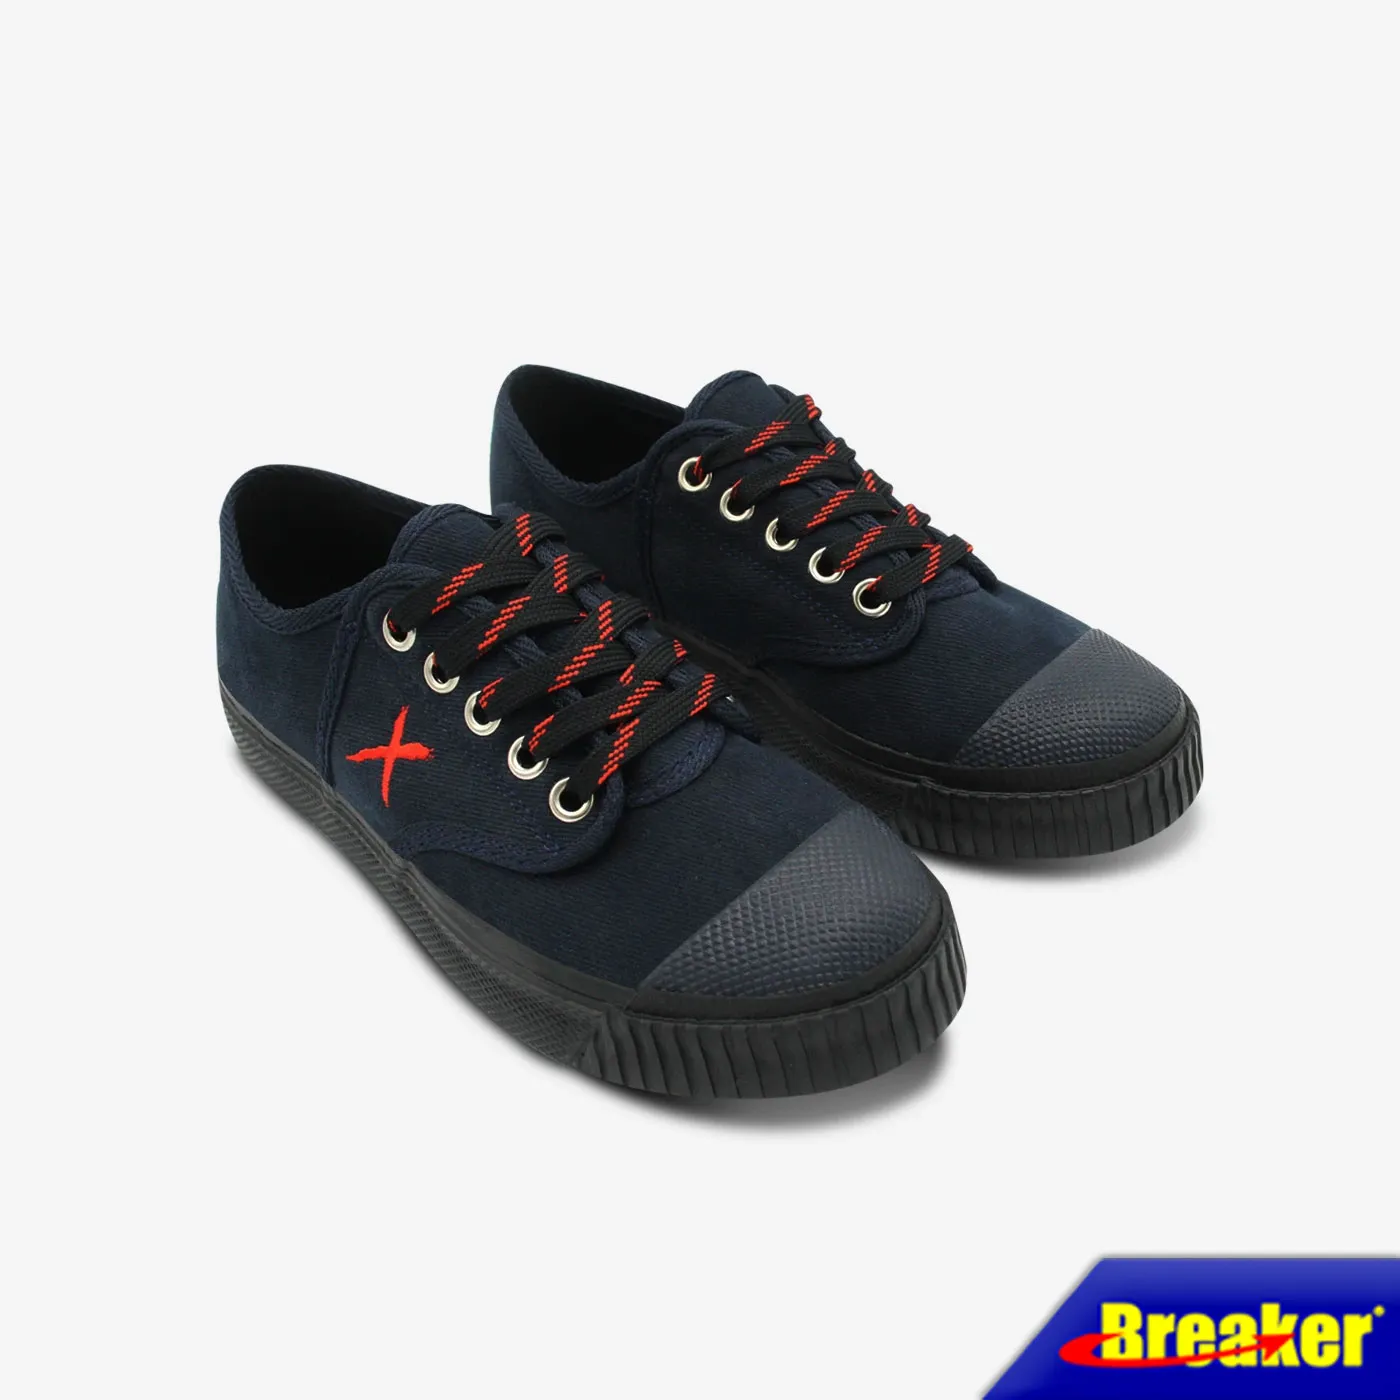 Breaker - X  รองเท้าแฟชั่นผู้ชาย รองเท้าผู้ชาย รองเท้าผ้าใบเบรกเกอร์ (BK-X1) สี Navy ใส่ทำงาน ใส่ออกกำลังกายได้สบายเท้า